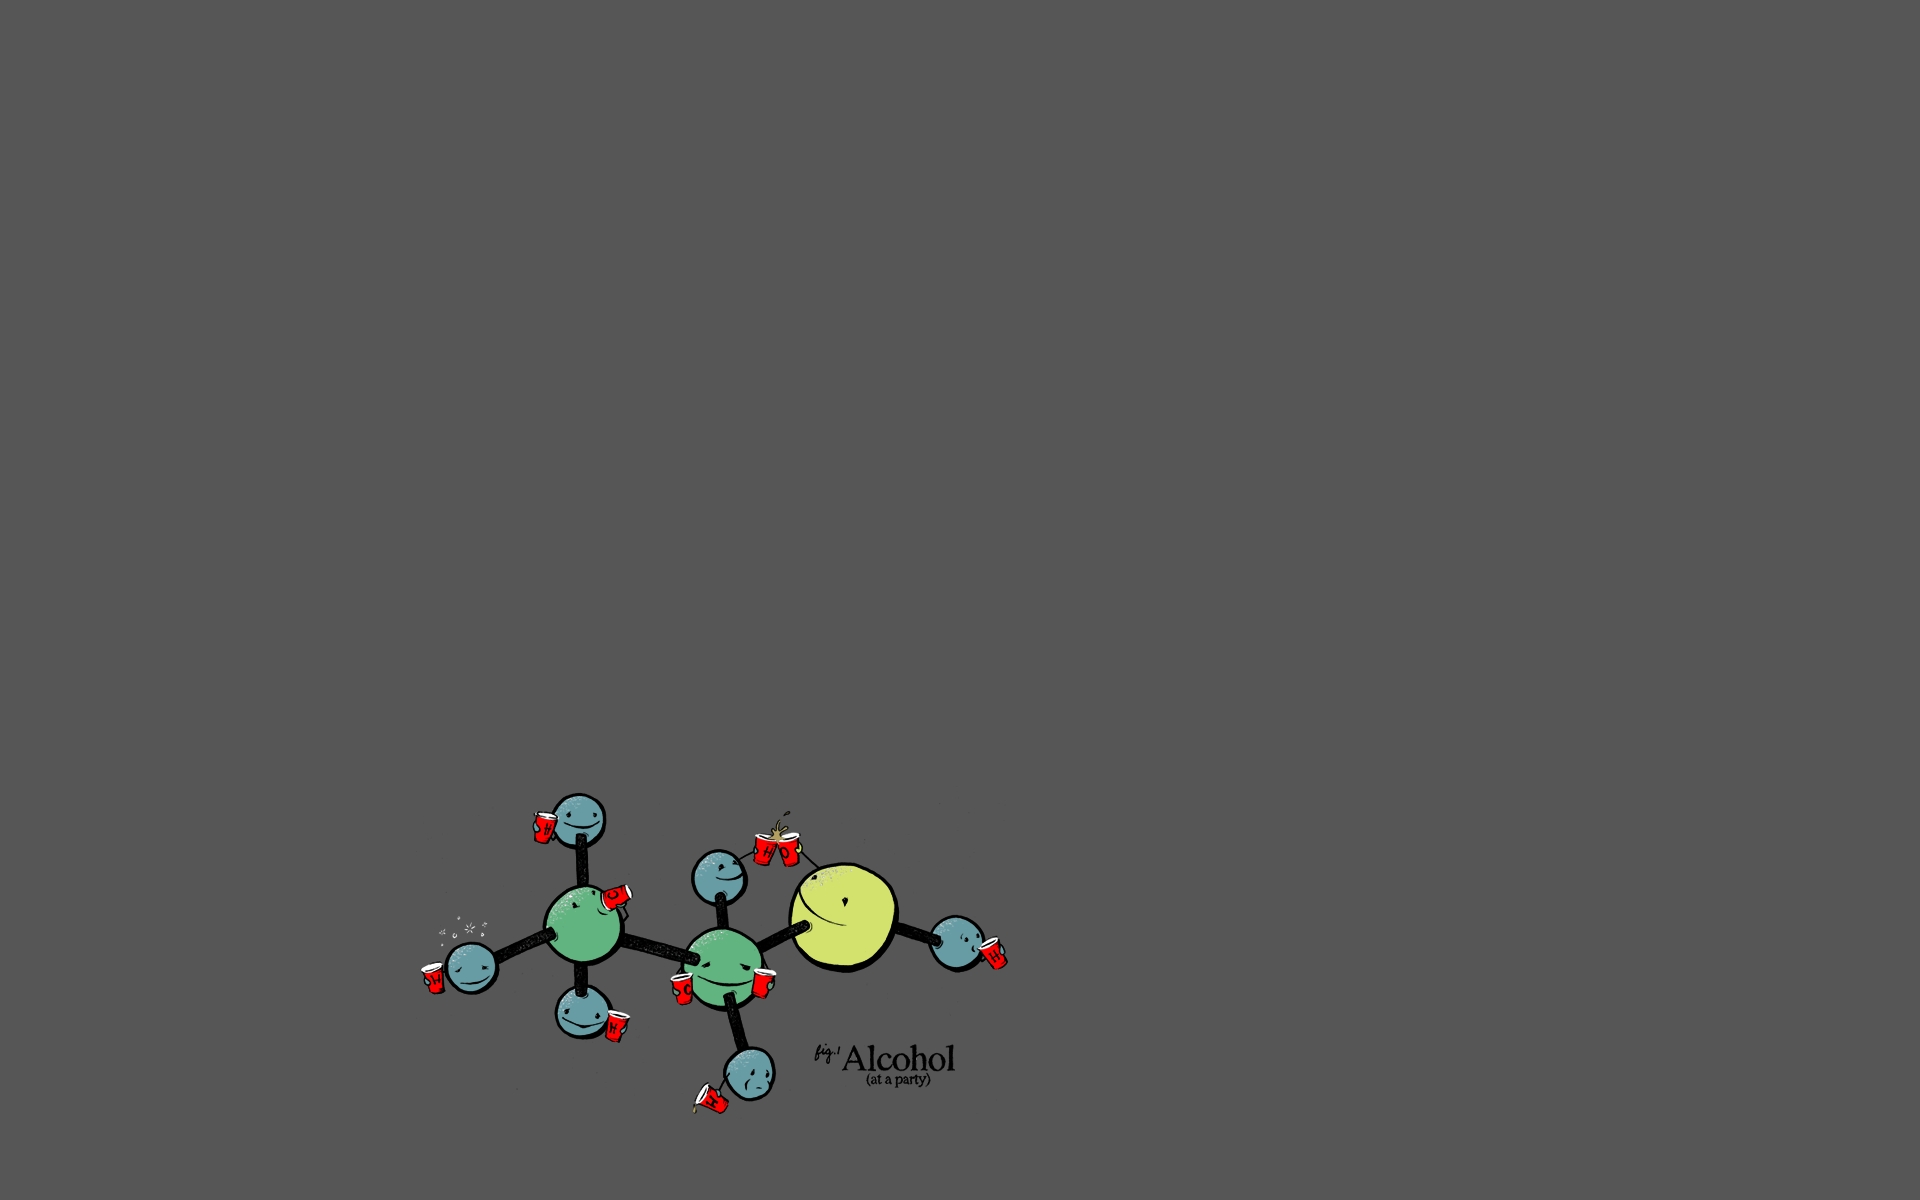 Molecule Chemistry Wallpaper